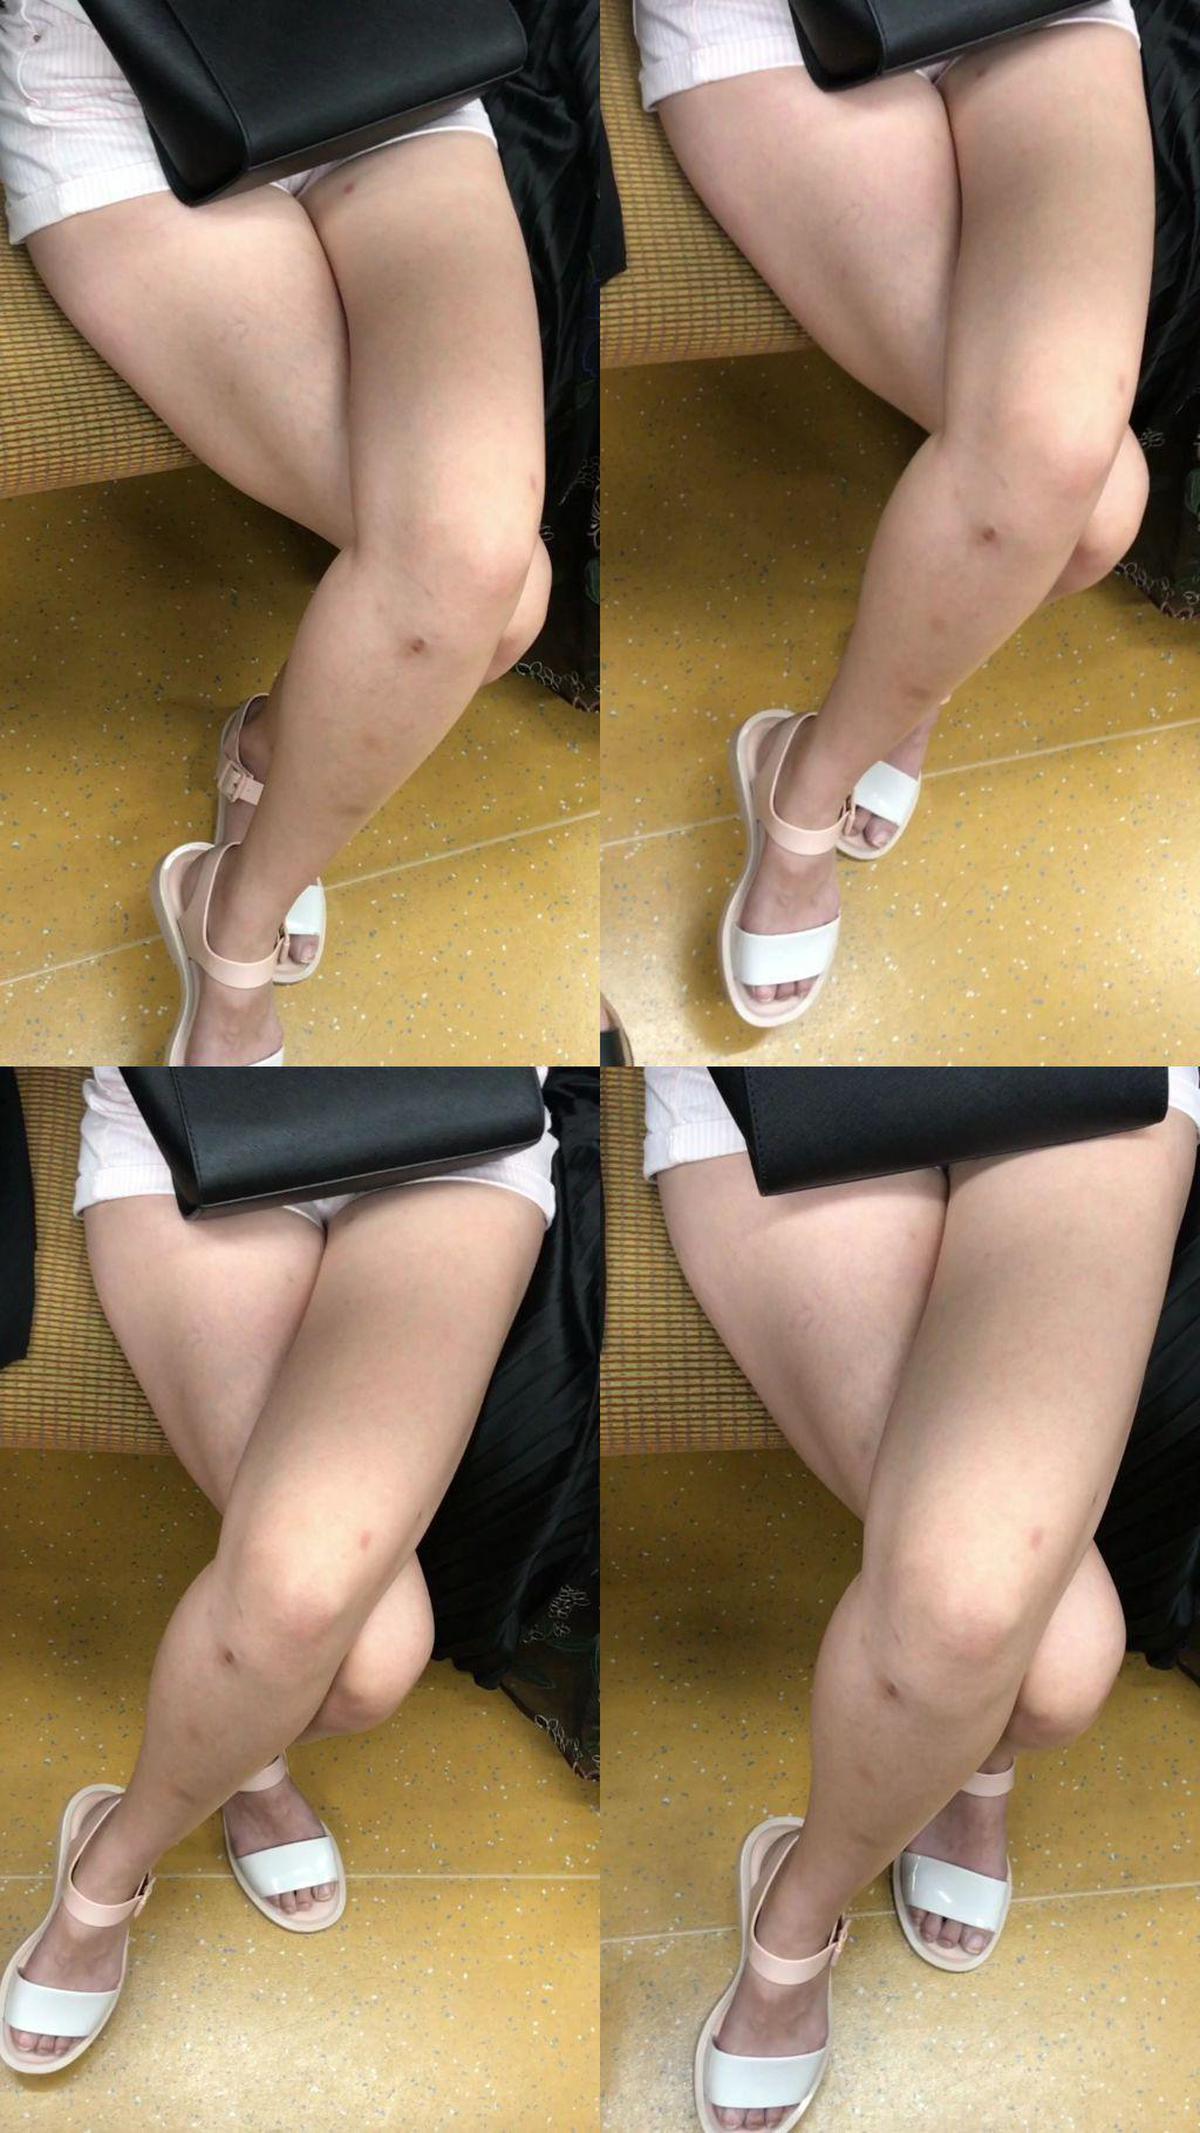 gcolle_metro_82 Scheinbar 21, Beinfetisch 190 Transzendente S-Klasse Schönheit Schwesters zu erotisch nackte Füße